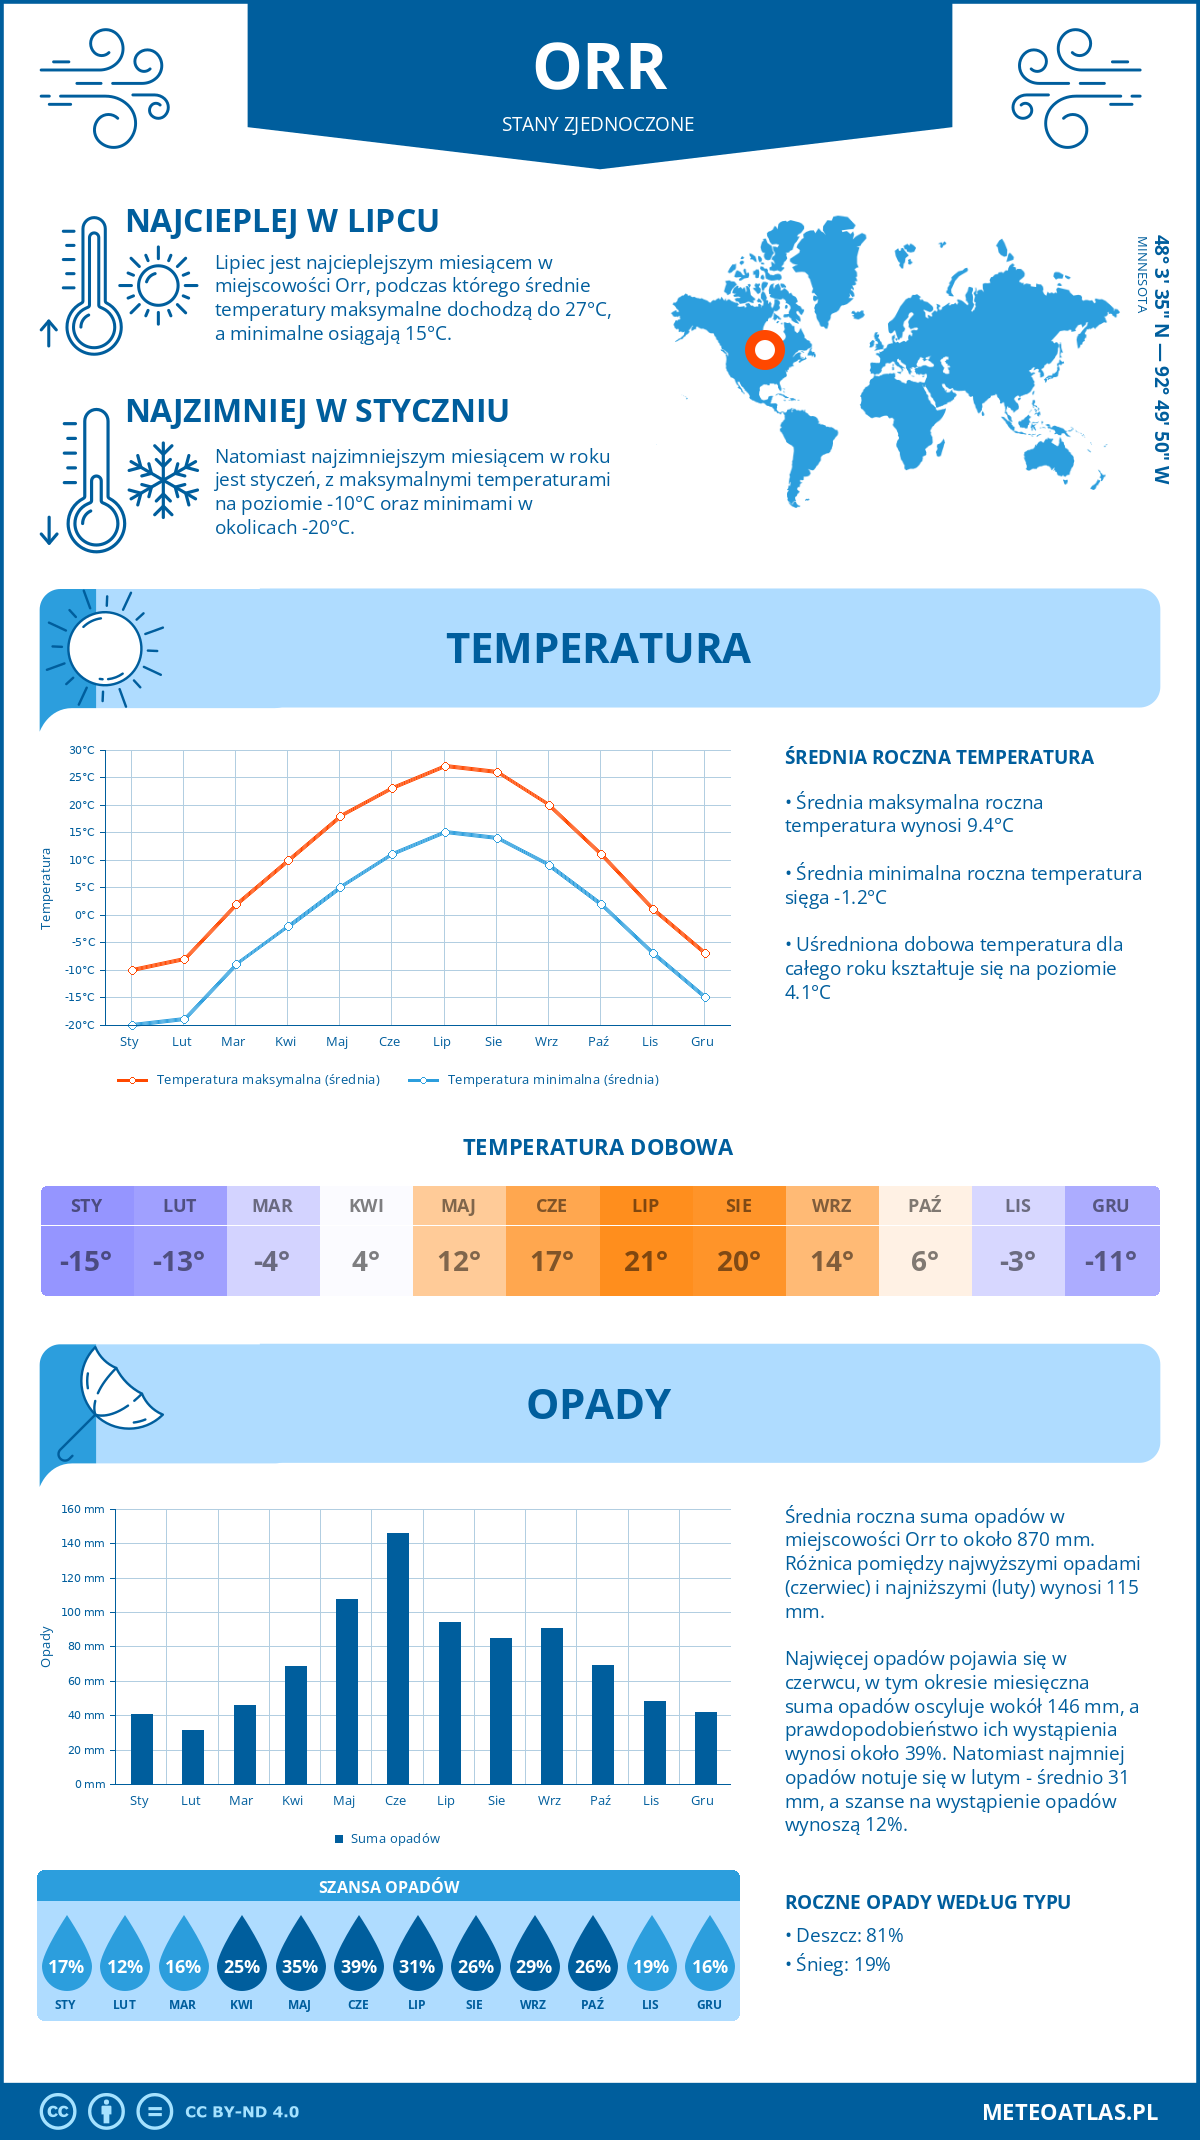 Pogoda Orr (Stany Zjednoczone). Temperatura oraz opady.